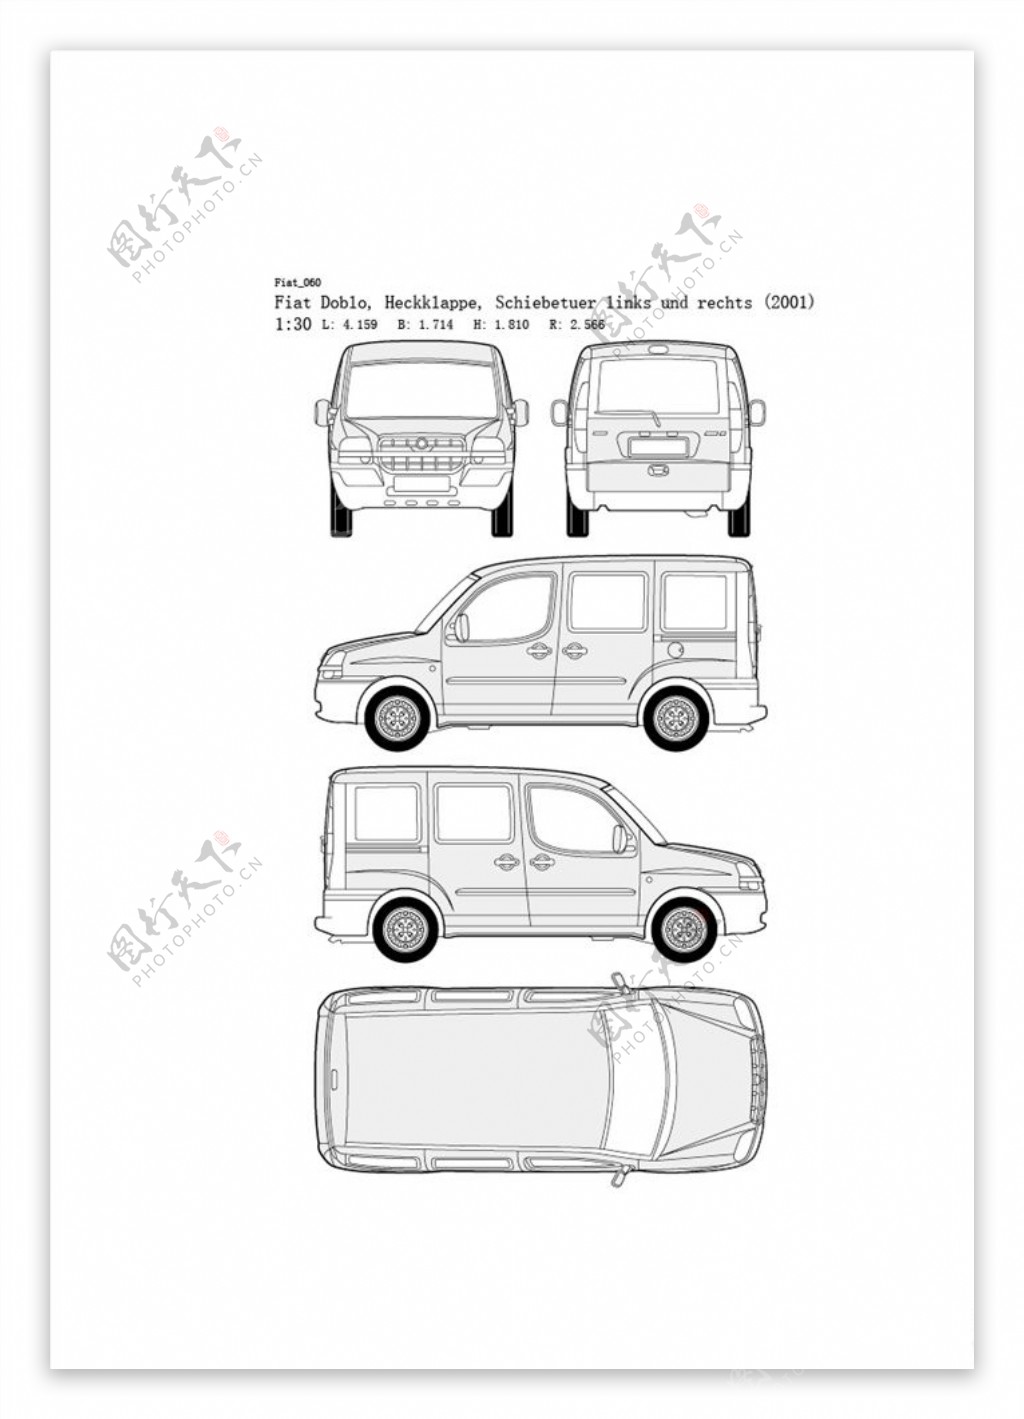 手绘汽车设计图Fiat